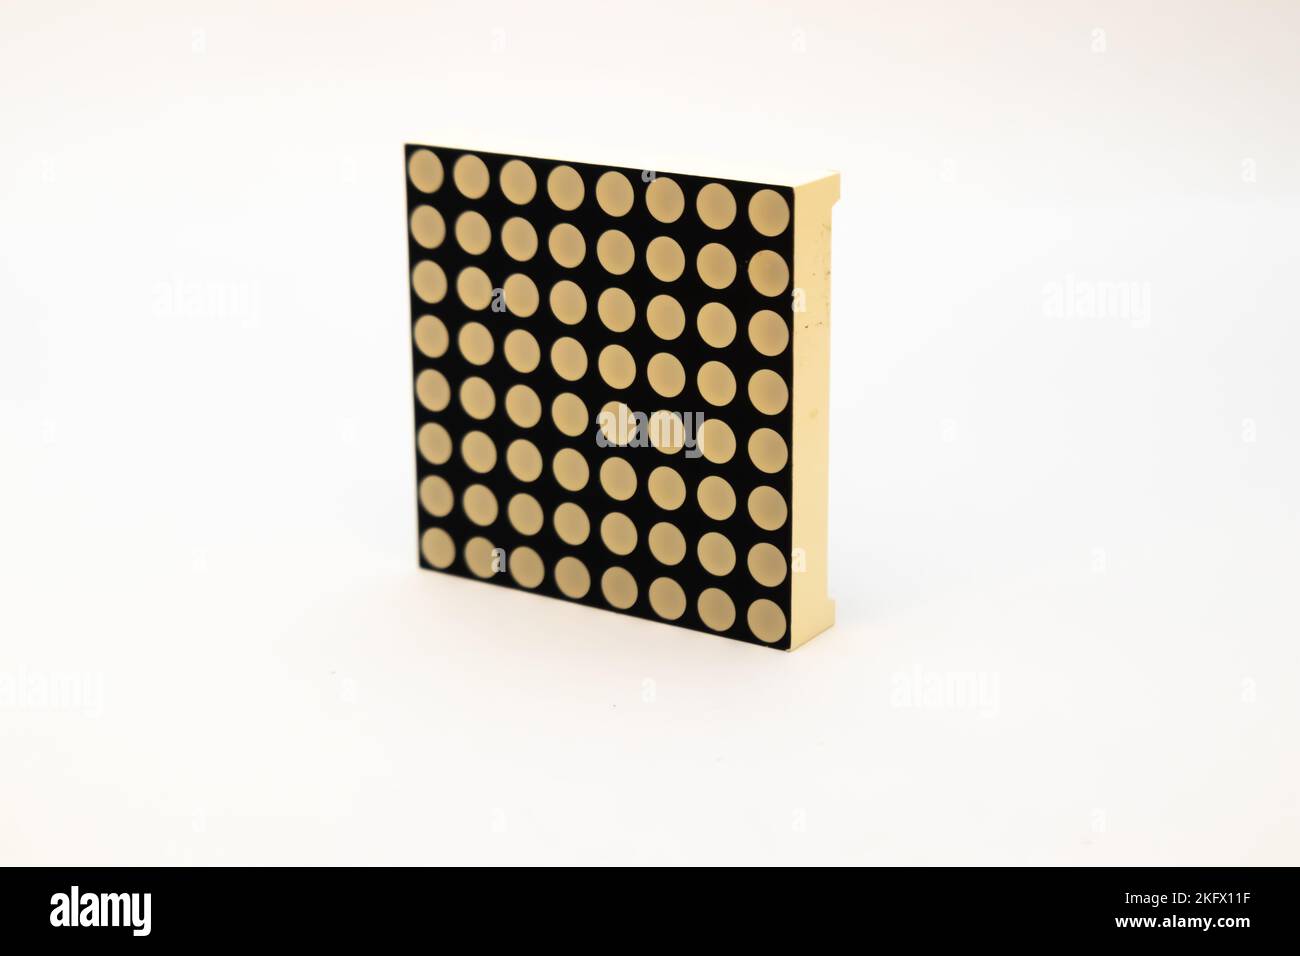 Vista frontale di un modulo LED a matrice di punti. Questa porta viene utilizzata dagli appassionati di elettronica per i materiali fai-da-te. Foto Stock